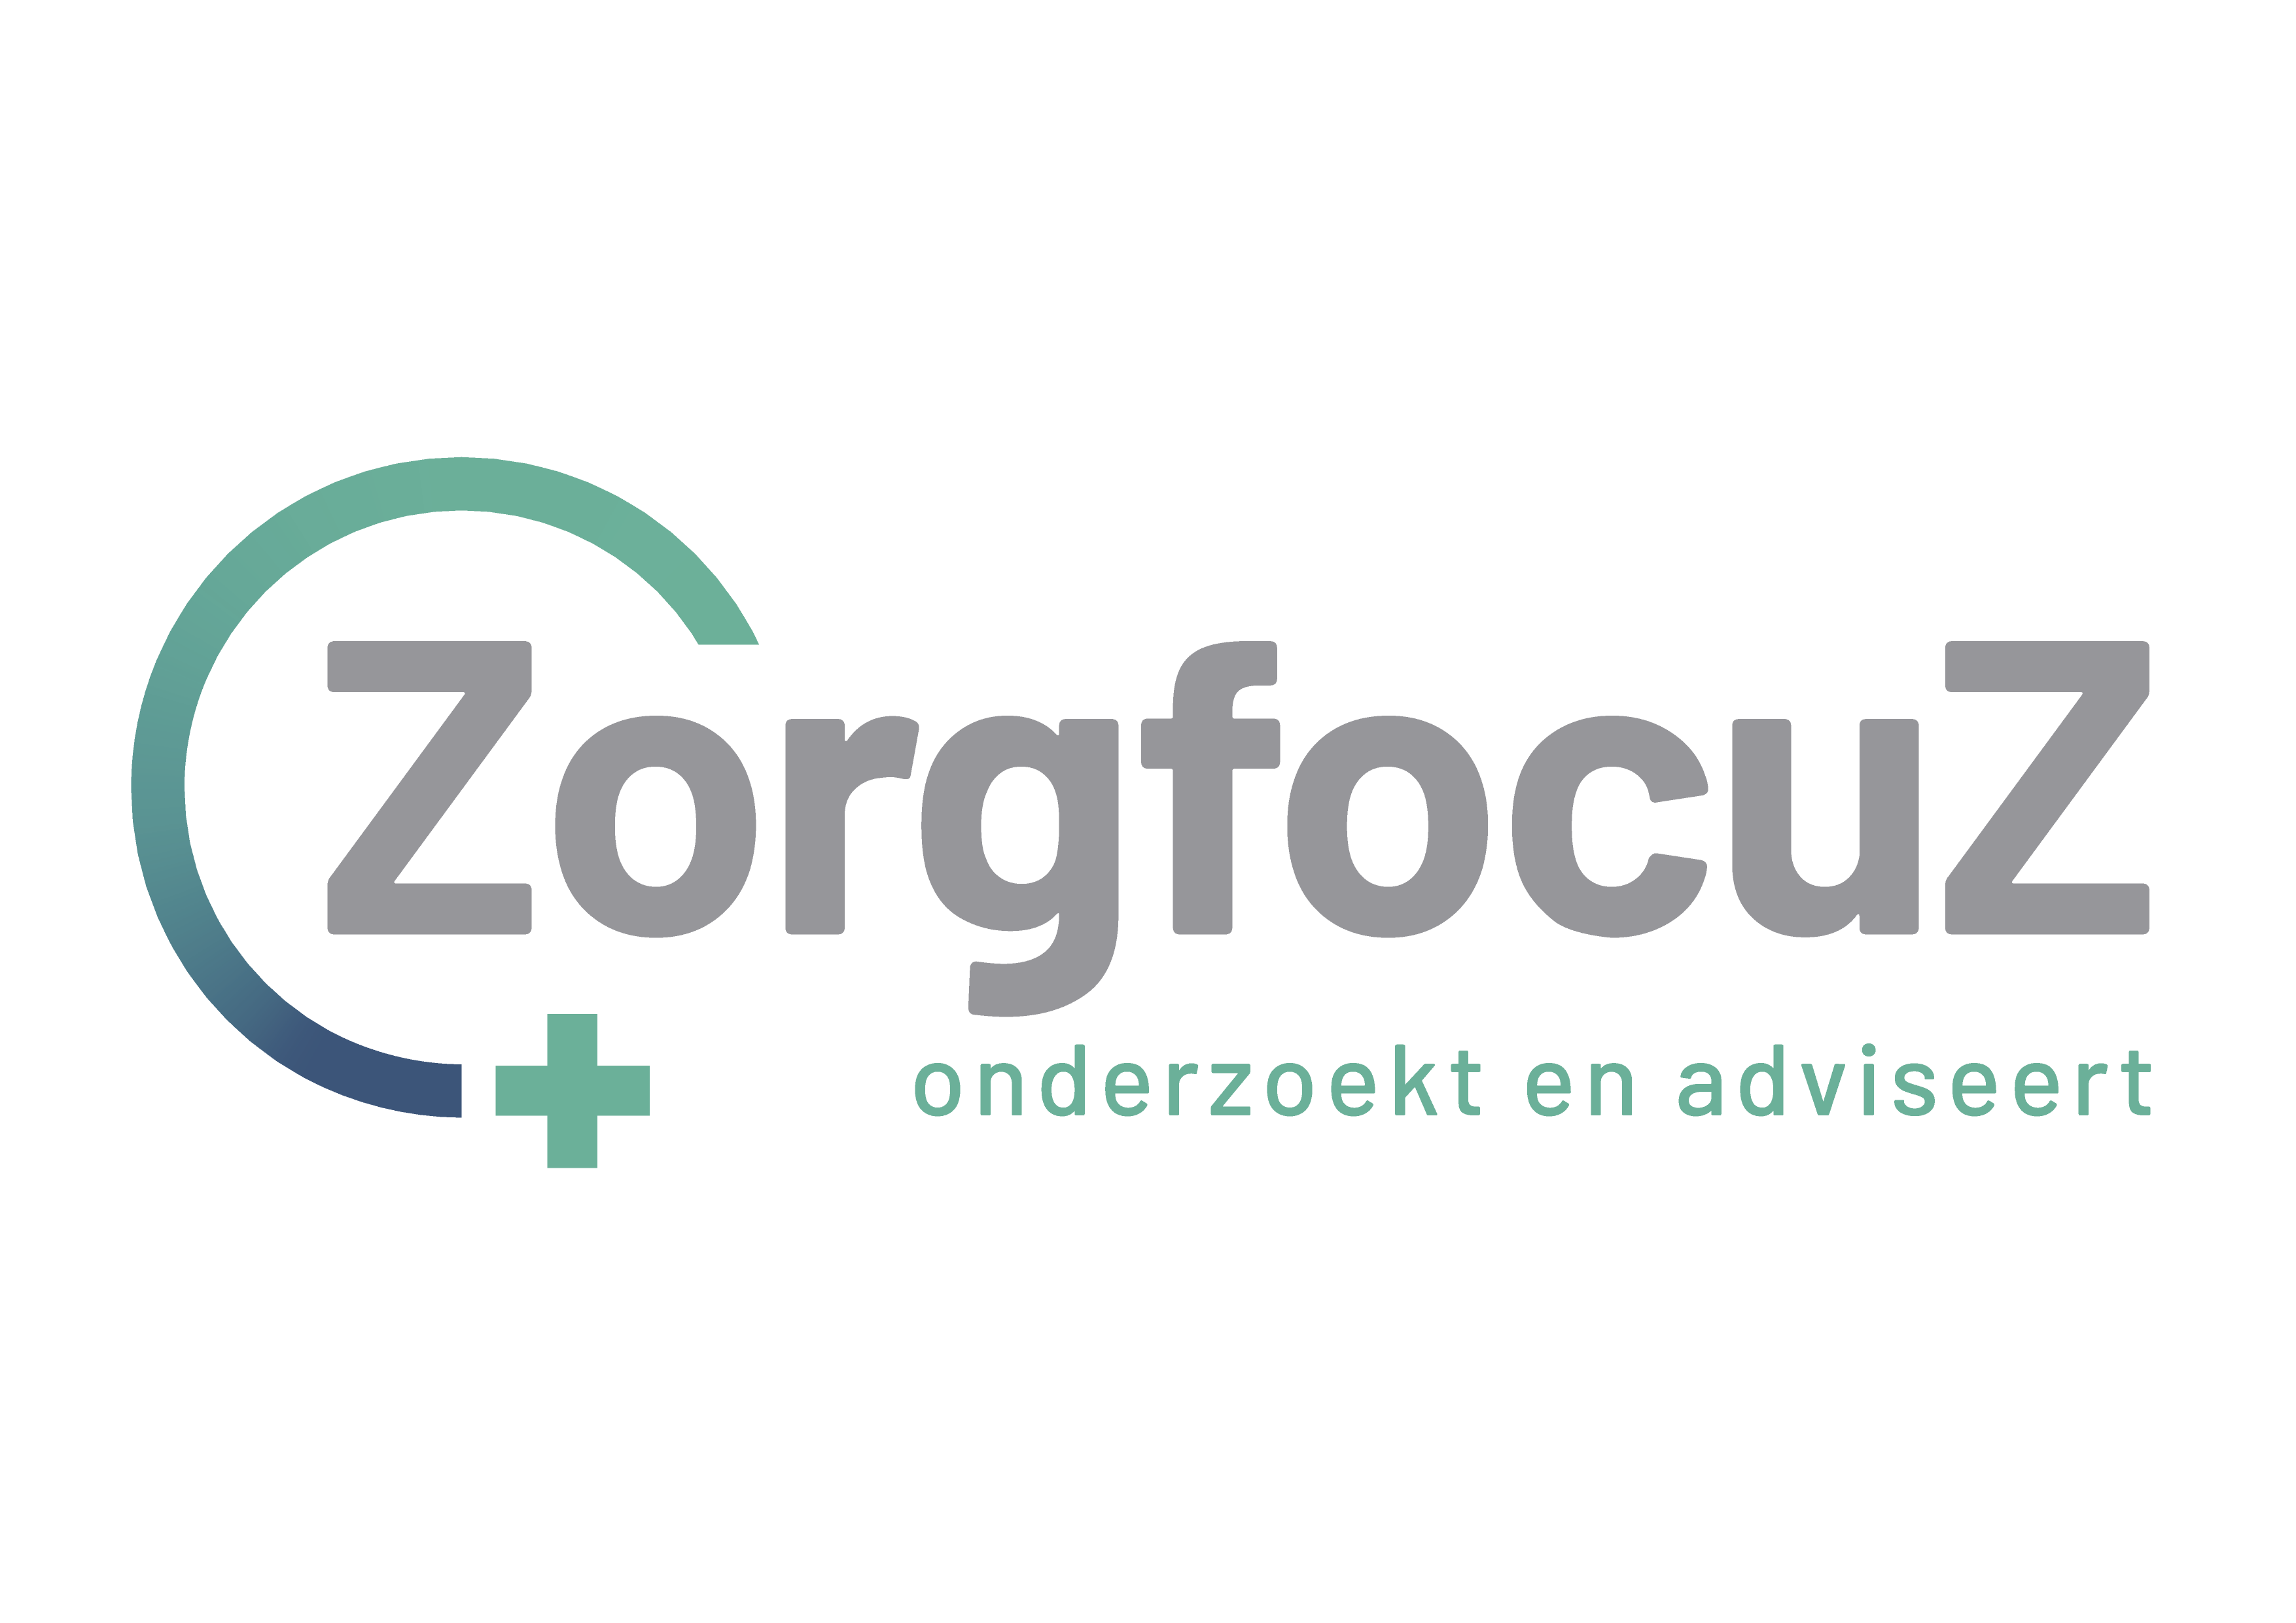 ZF_Logo